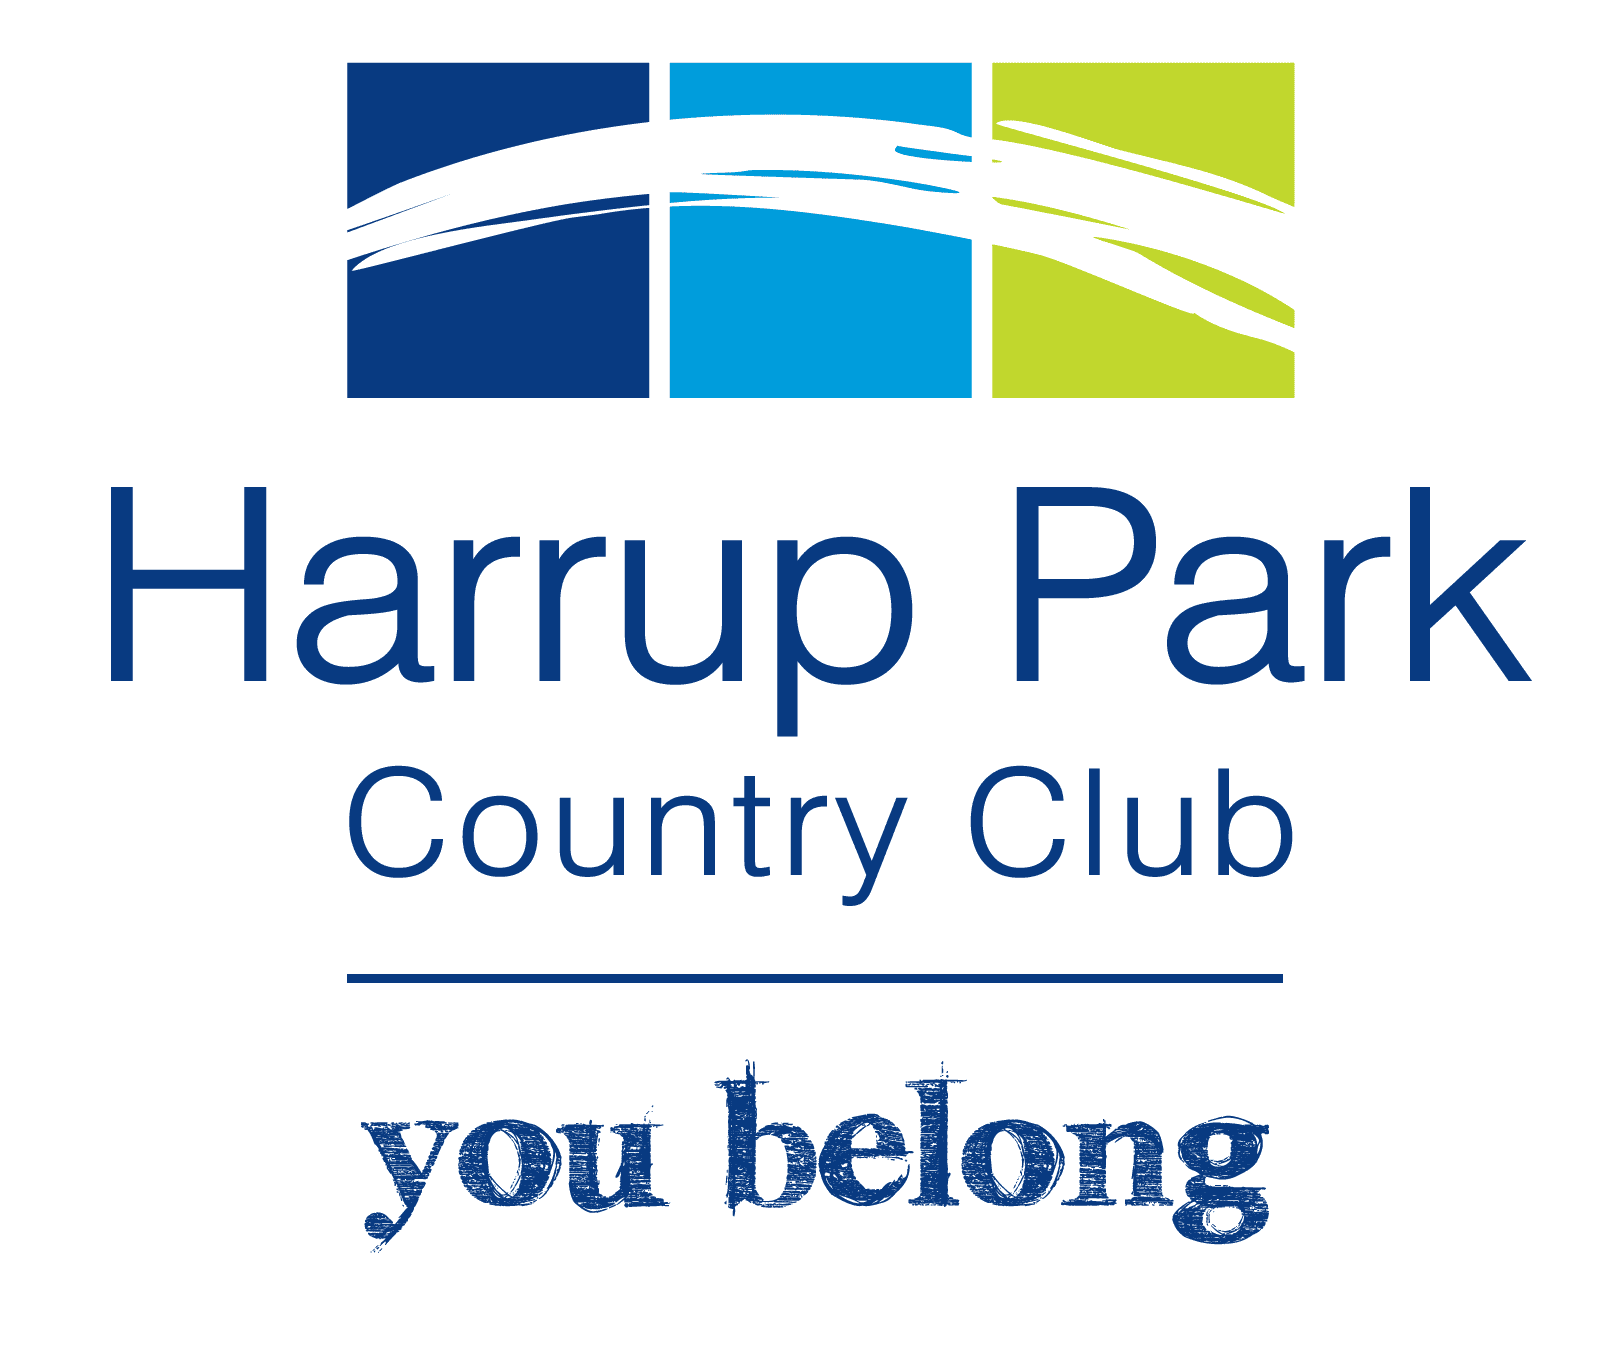 Mackay Netball harrup park country club logo